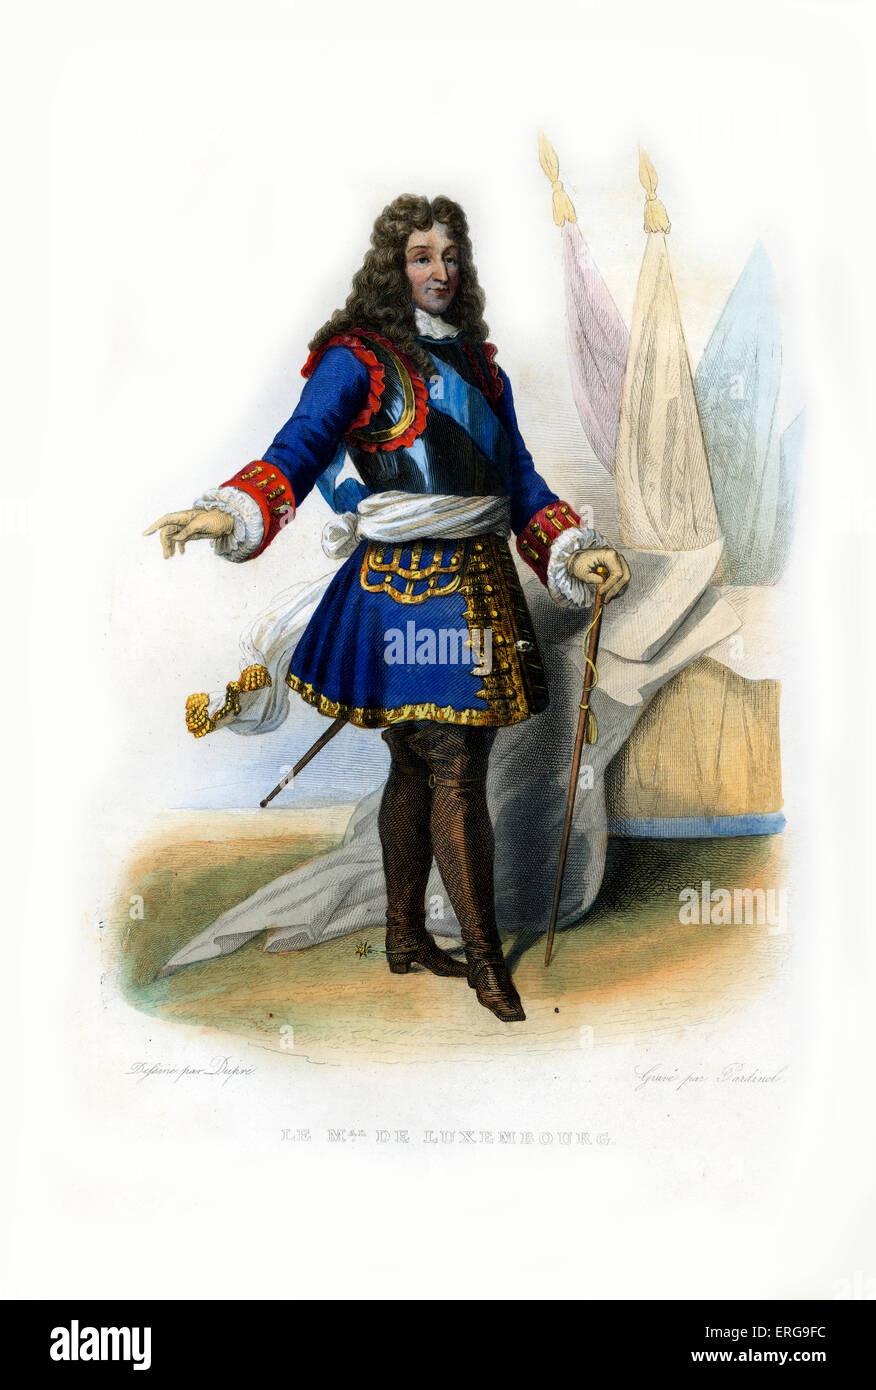 François Henri de Montmorency-Bouteville, der Herzog von Piney, genannt de Luxembourg. Französischer general, Marschall von Frankreich. 1628-1695. Kupferstich von Parnind.c.1845 Stockfoto